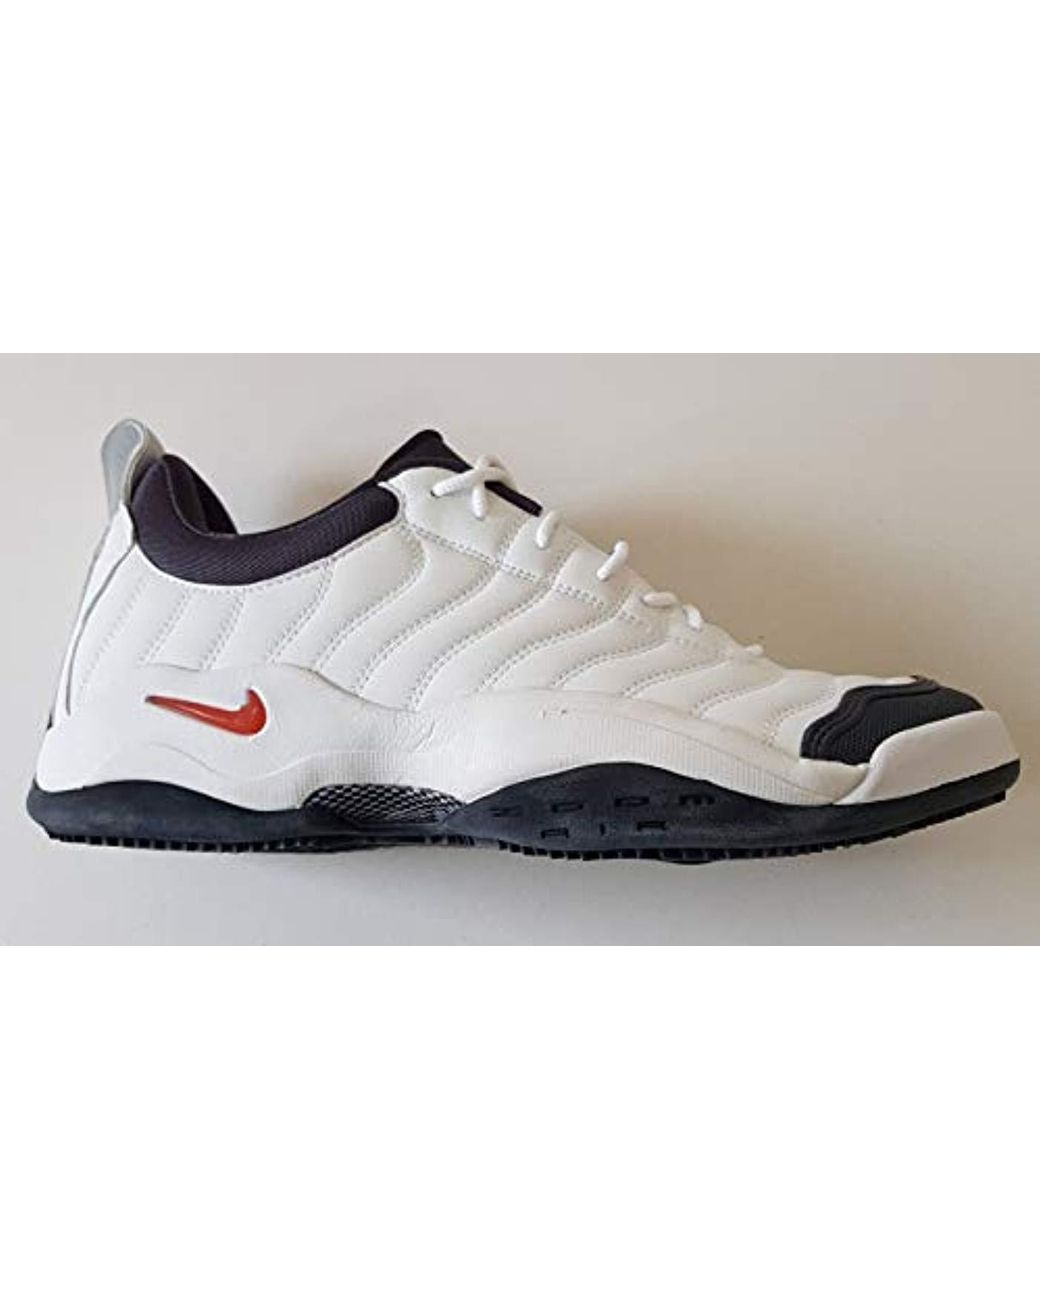 Rodeo humedad Embajador Nike Air Oscillate Tennis Shoes Original 2004 Uk 11, Eur 46 for Men | Lyst  UK